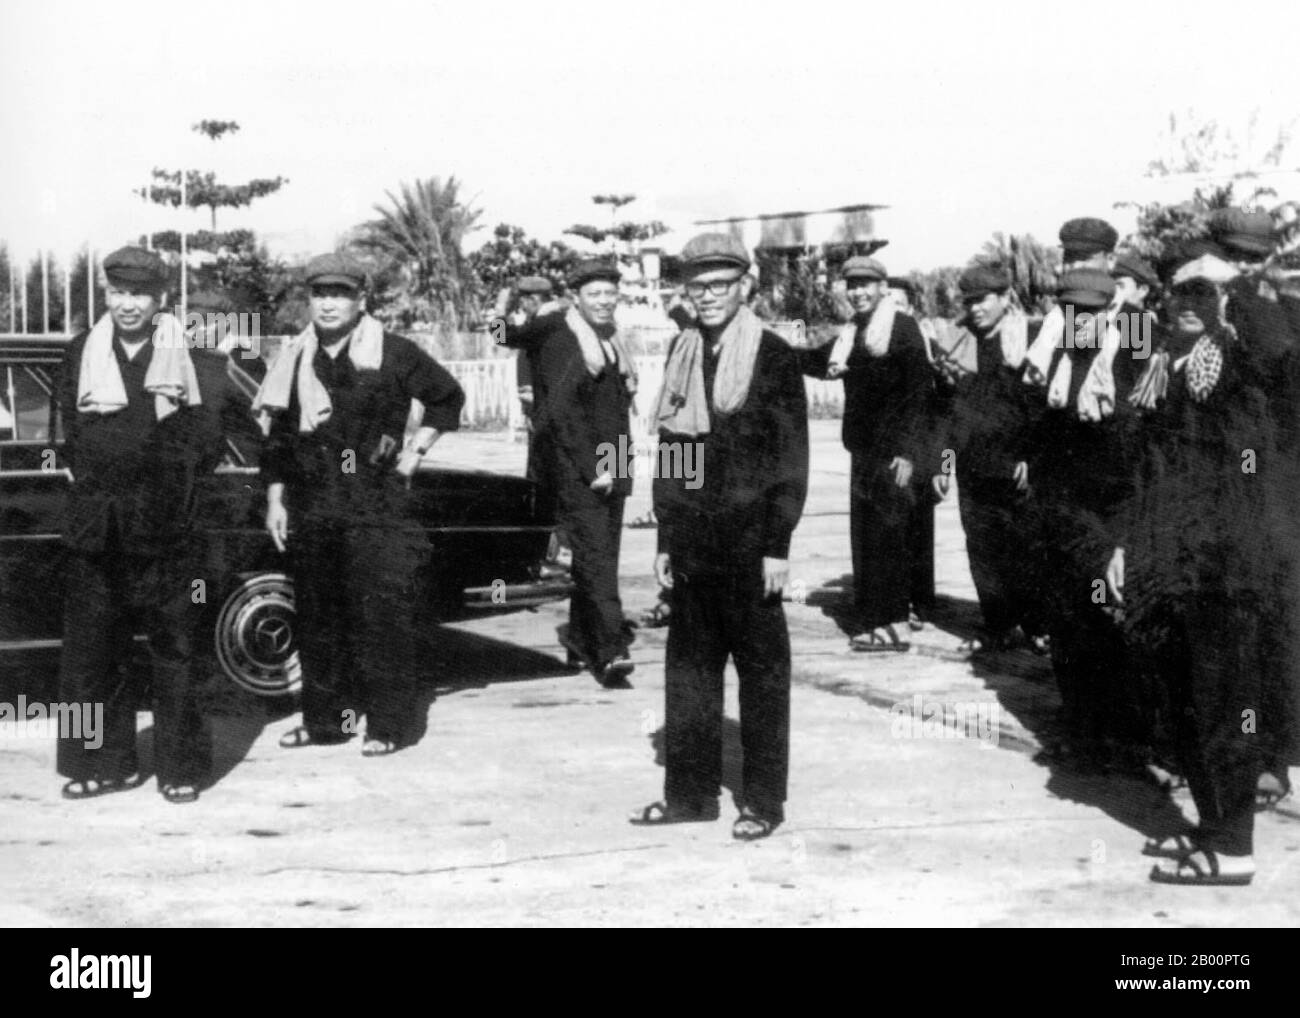 Camboya: Liderazgo de los Jemeres rojos. De izquierda a derecha: Pol Pot, Nuon Chea, Ieng Sary, son Sen y Vorn Vet con cuadros superiores, probablemente en el aeropuerto de Pochentong c. 1977. Jemeres rojos Liderazgo: Pol Pot = Hermano no 1, Nuon Chea = Hermano no 2, Ieng Sary = Hermano no 3. Son Sen, Vorn Vet. Foto de stock